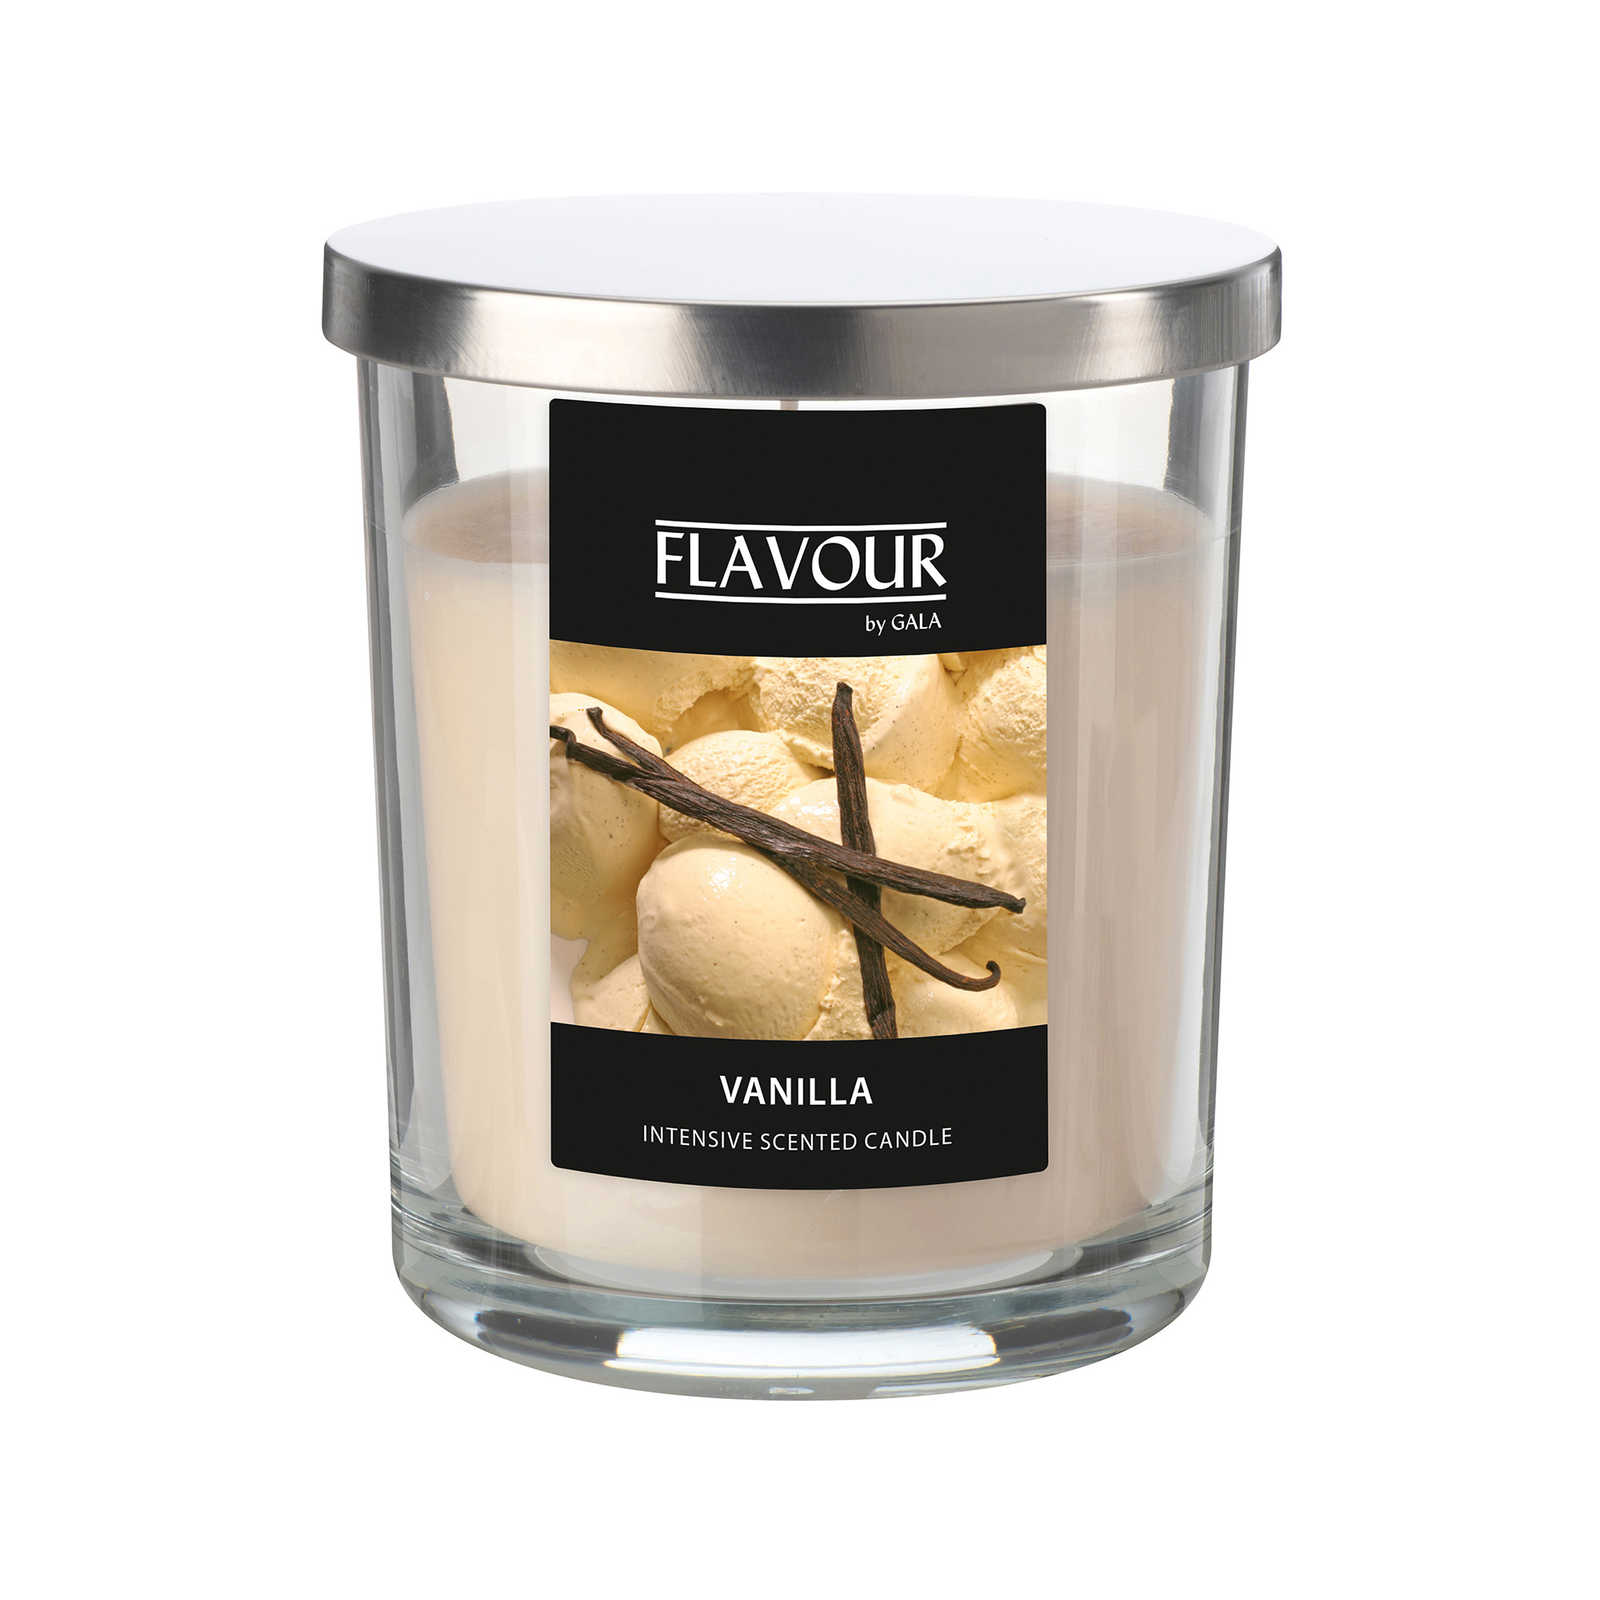         Vanille Duftkerze mit cremigen Vanilleduft – 380g
    